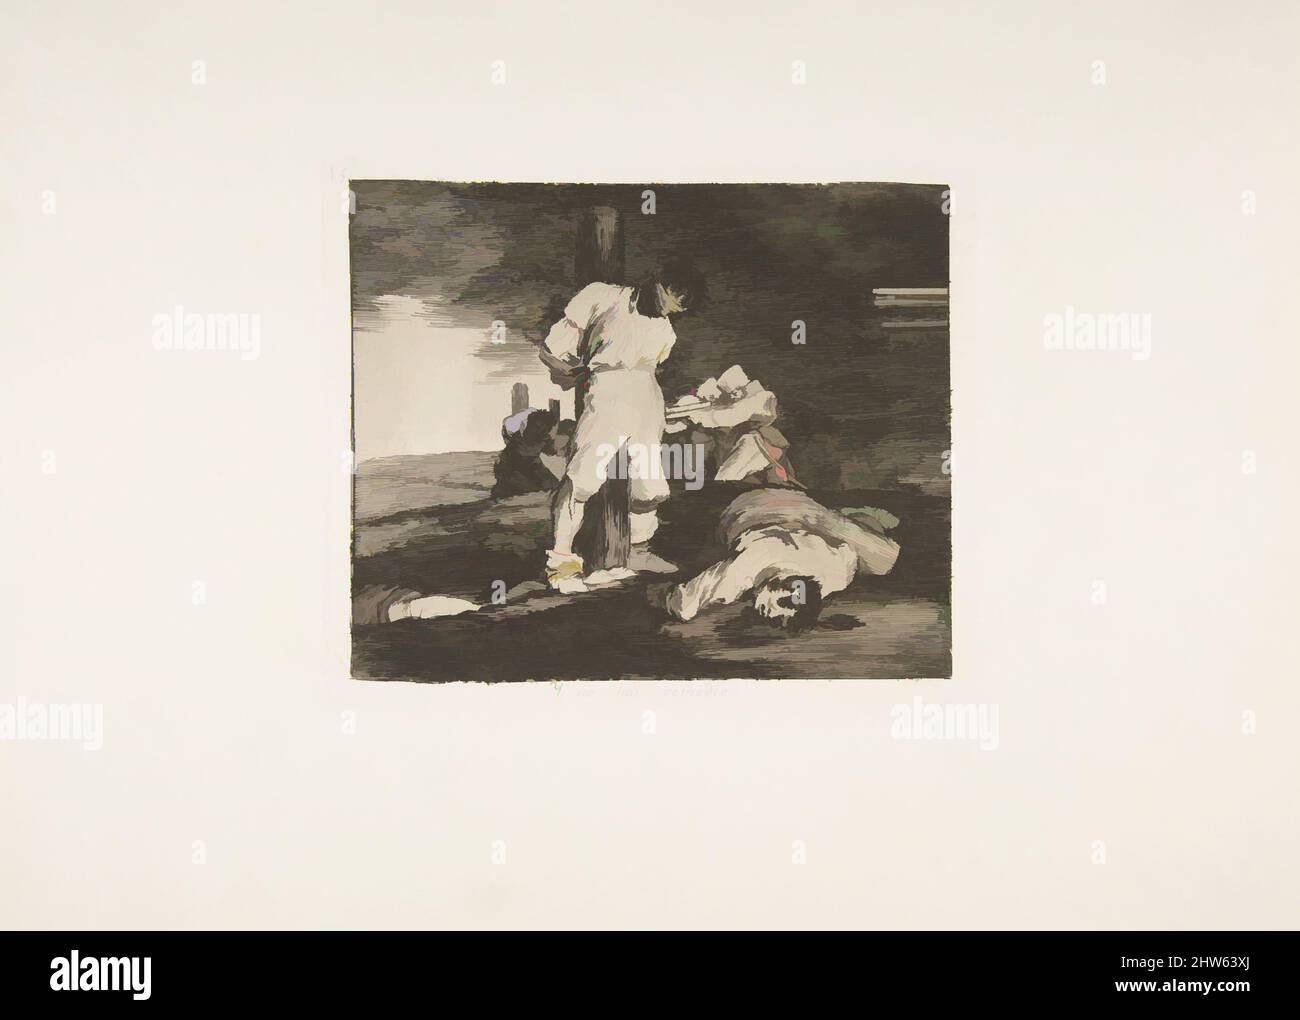 Art inspiré par la planche 15 de 'les désastres de la guerre' (Los Desastres de la Guerra):et il n'y a rien à faire (y no hai remado), 1810 ( publié en 1863), Etching, point sec, burin et burnisher, plaque: 5 1/2 × 6 9/16 in. (14 × 16,6 cm), Prints, Goya (Francisco de Goya y Lucientes) (, oeuvres classiques modernisées par Artotop avec un peu de modernité. Formes, couleur et valeur, impact visuel accrocheur sur l'art émotions par la liberté d'œuvres d'art d'une manière contemporaine. Un message intemporel qui cherche une nouvelle direction créative. Artistes qui se tournent vers le support numérique et créent le NFT Artotop Banque D'Images